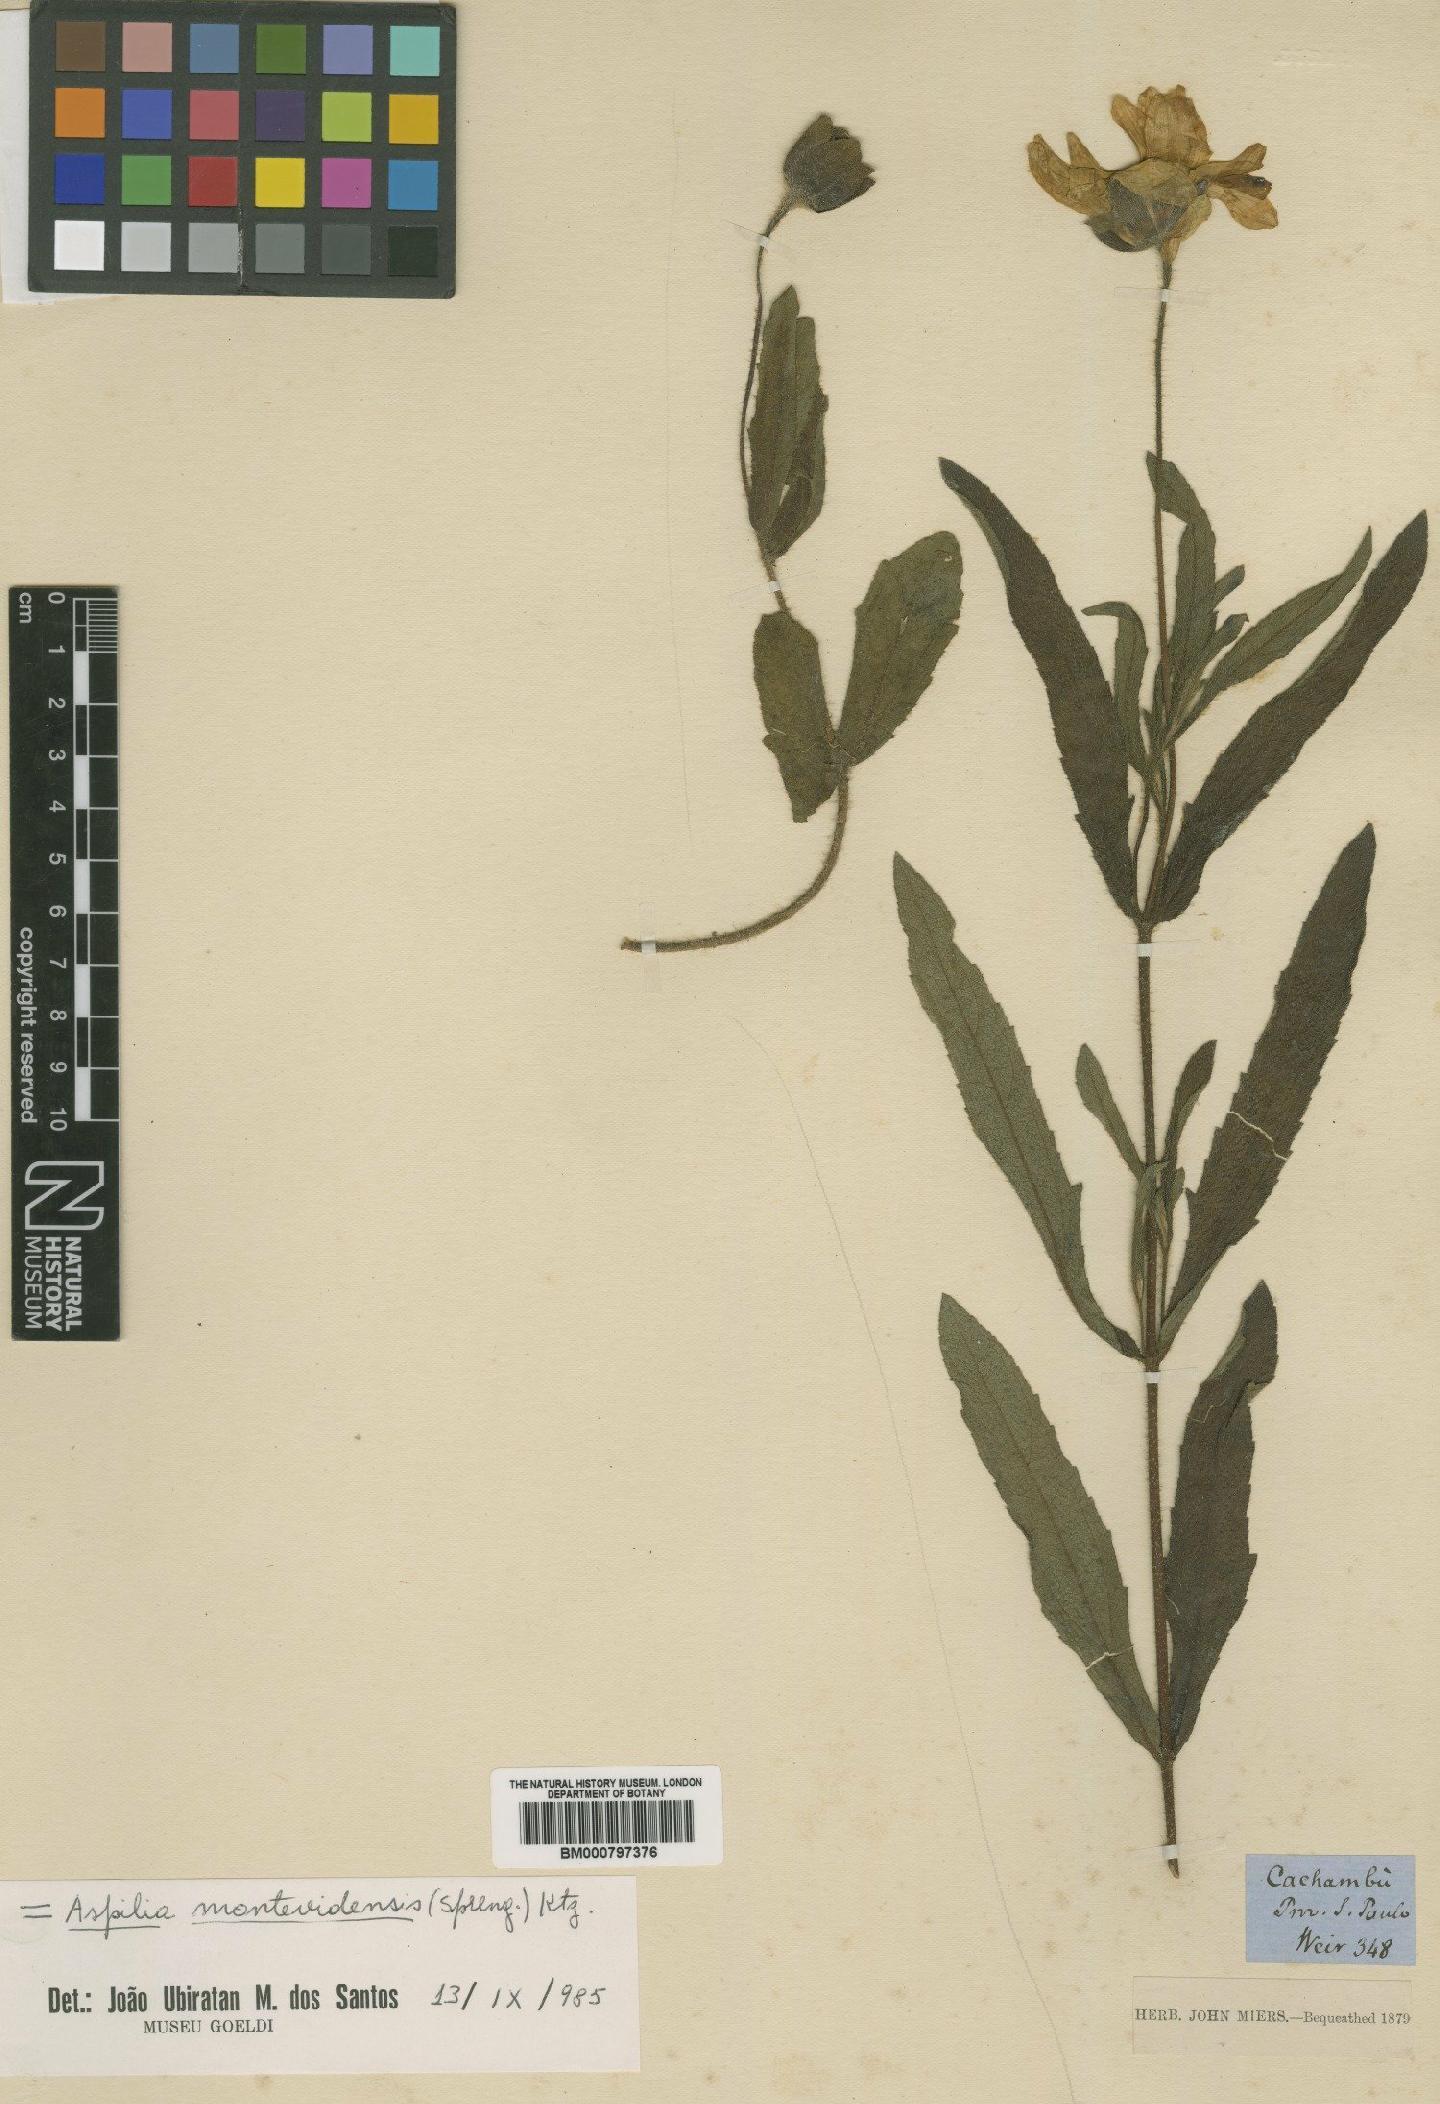 To NHMUK collection (Aspilia montevidensis (Spreng.) Kuntze; Type; NHMUK:ecatalogue:4990156)